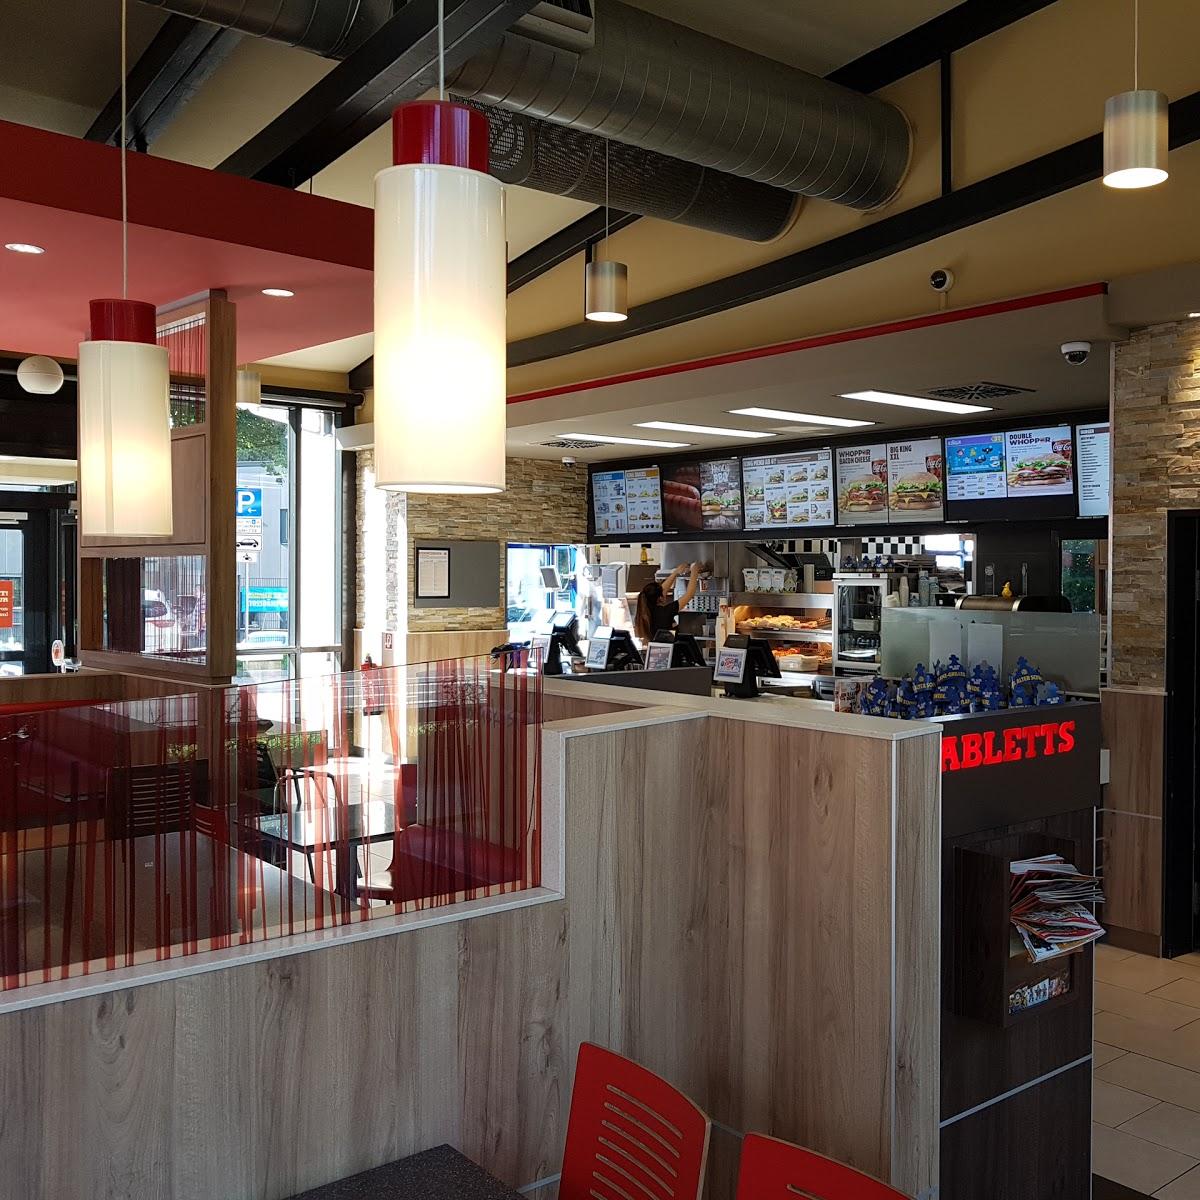 Restaurant "Burger King" in Leverkusen